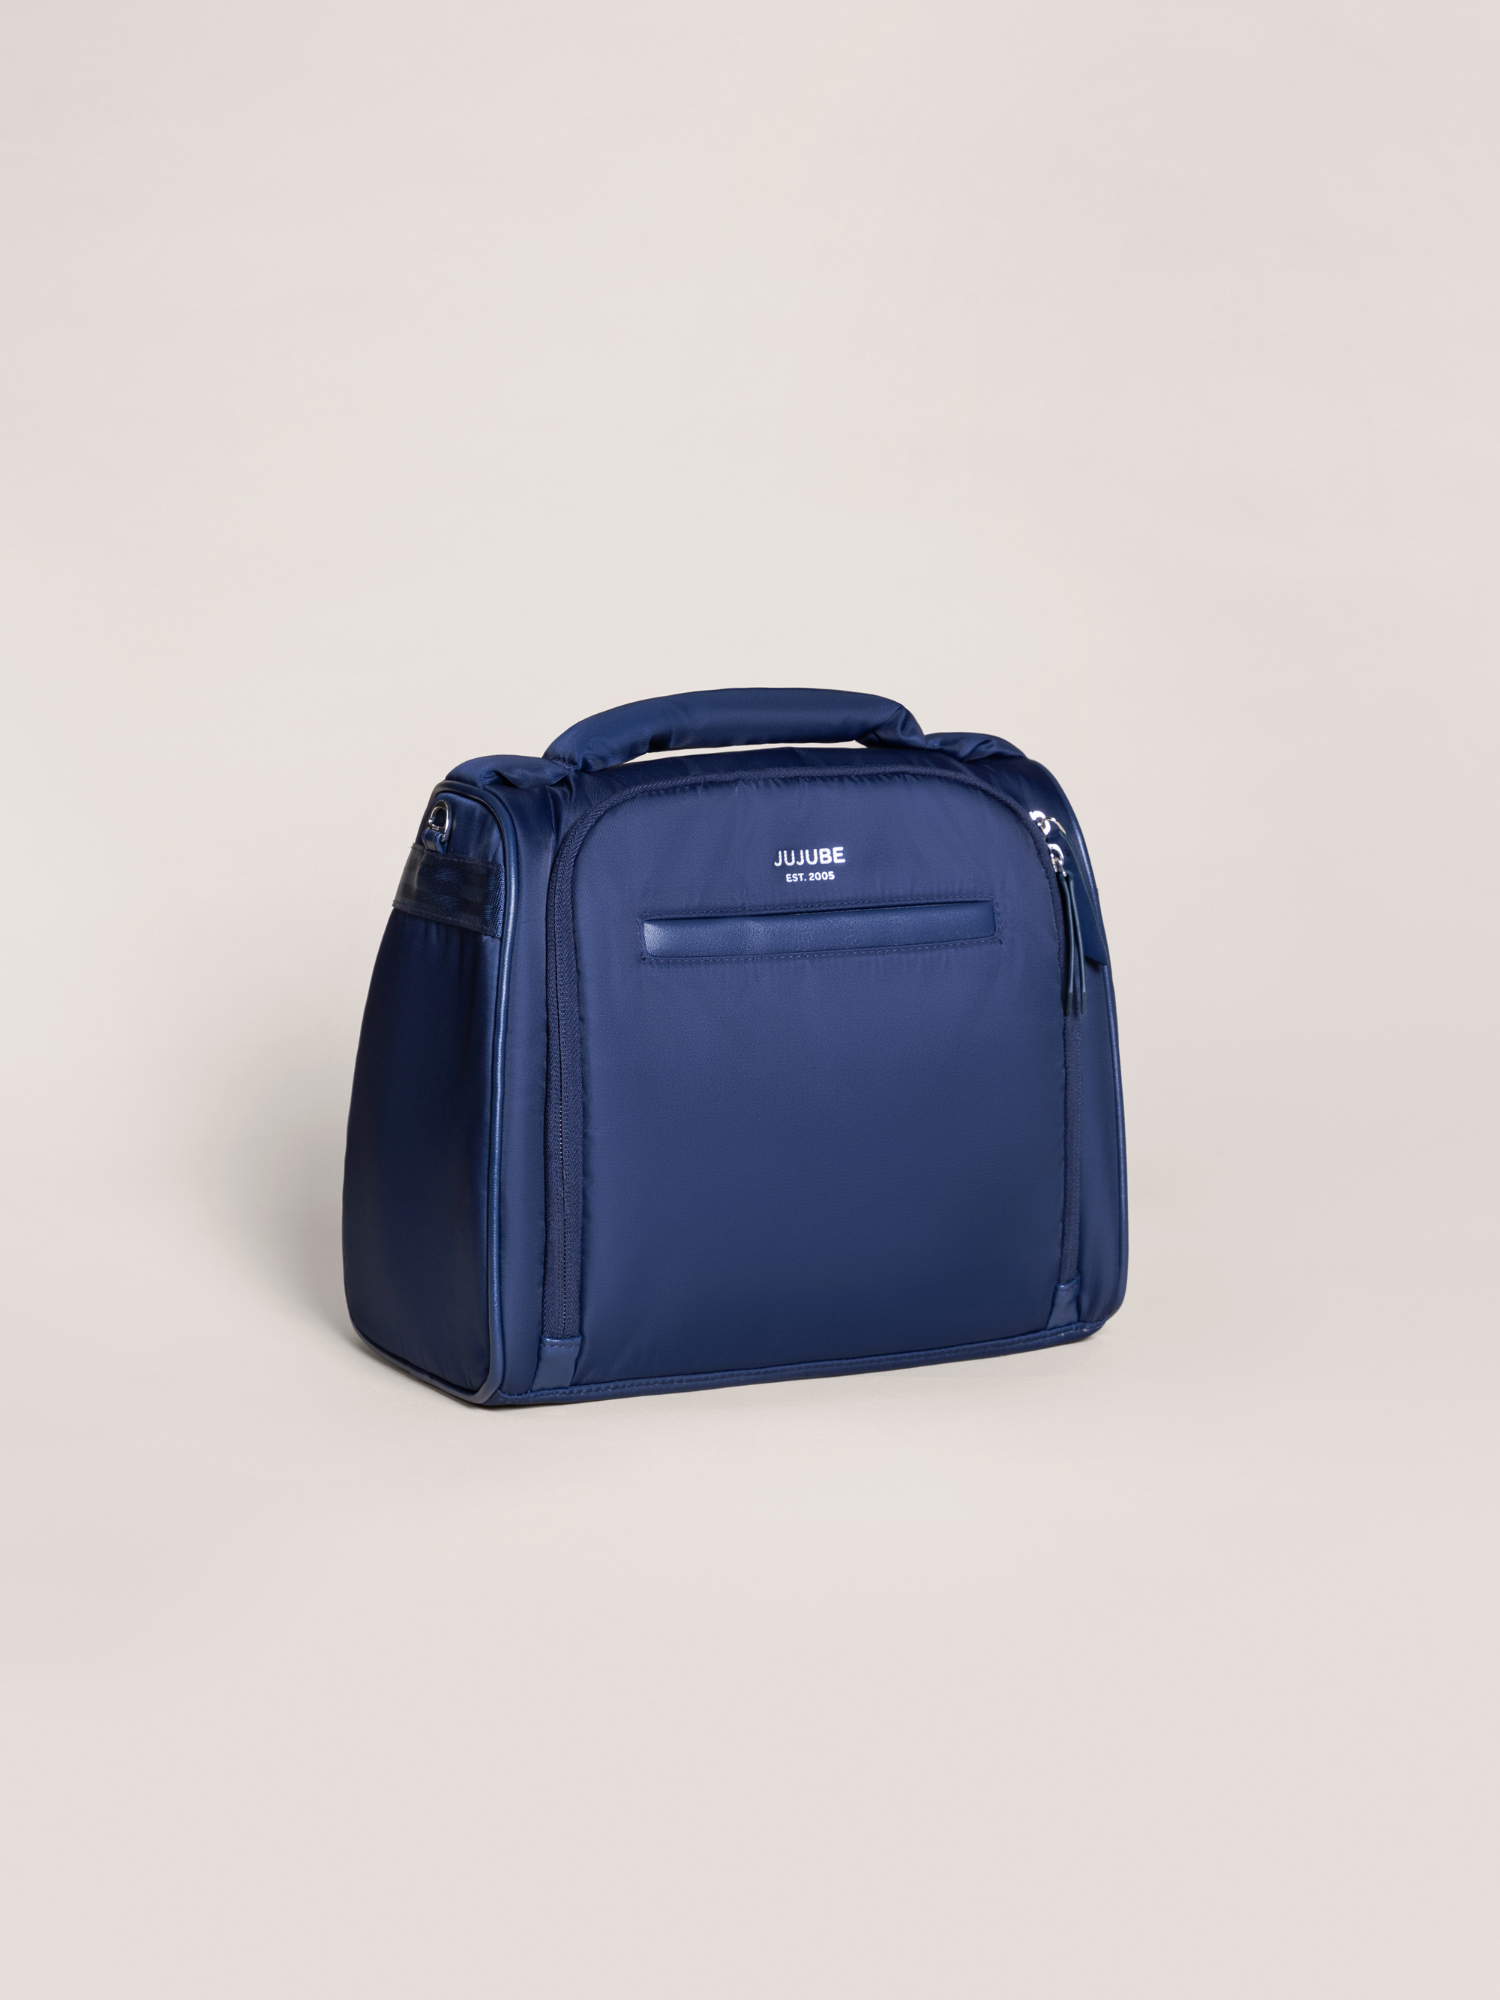 Cabine Travel bag - Navy Blue